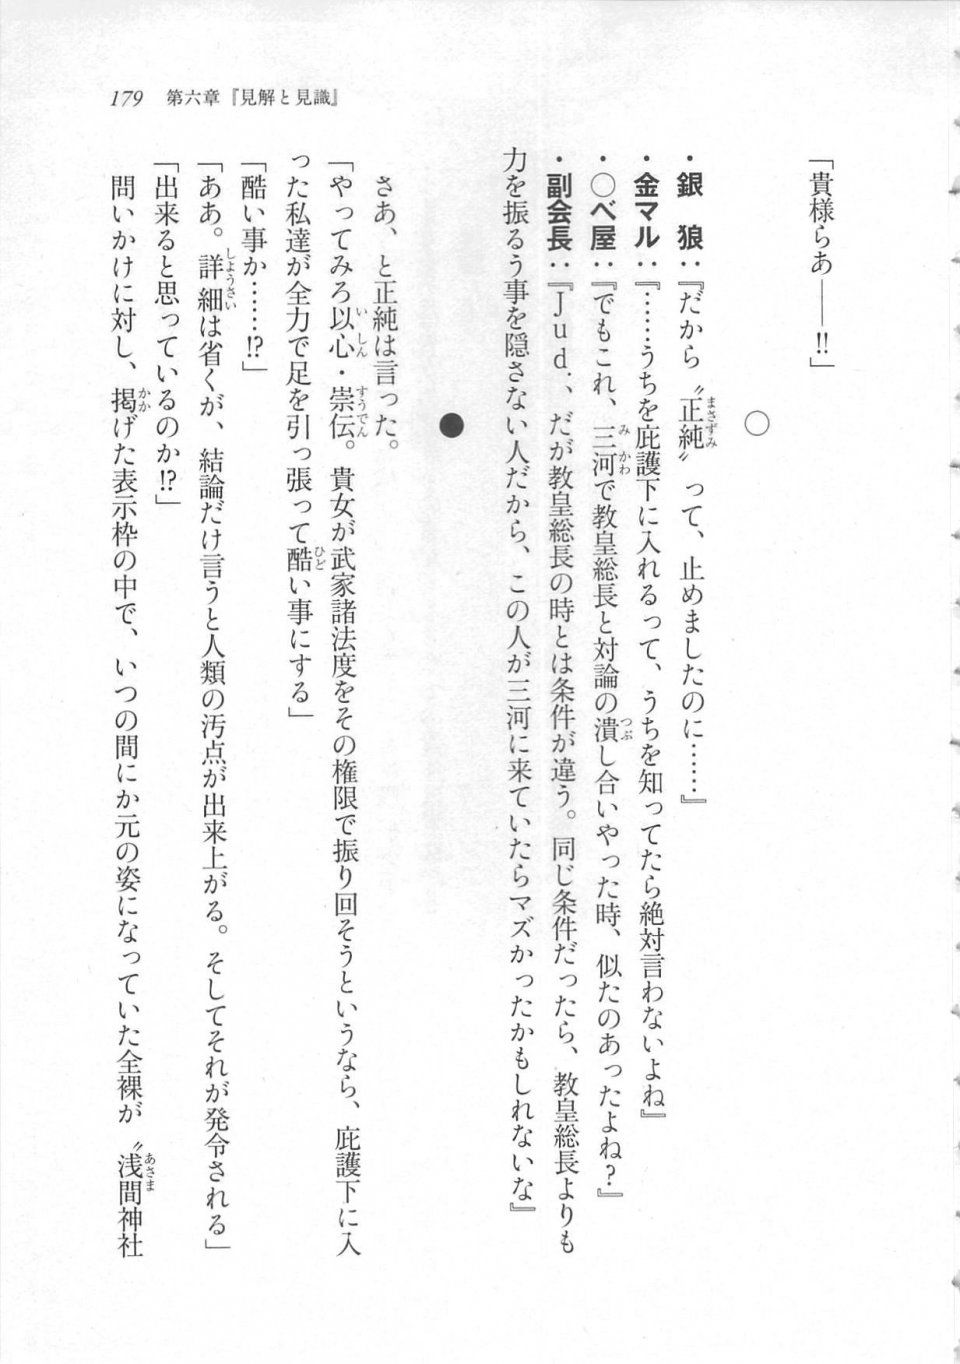 Kyoukai Senjou no Horizon LN Sidestory Vol 3 - Photo #183